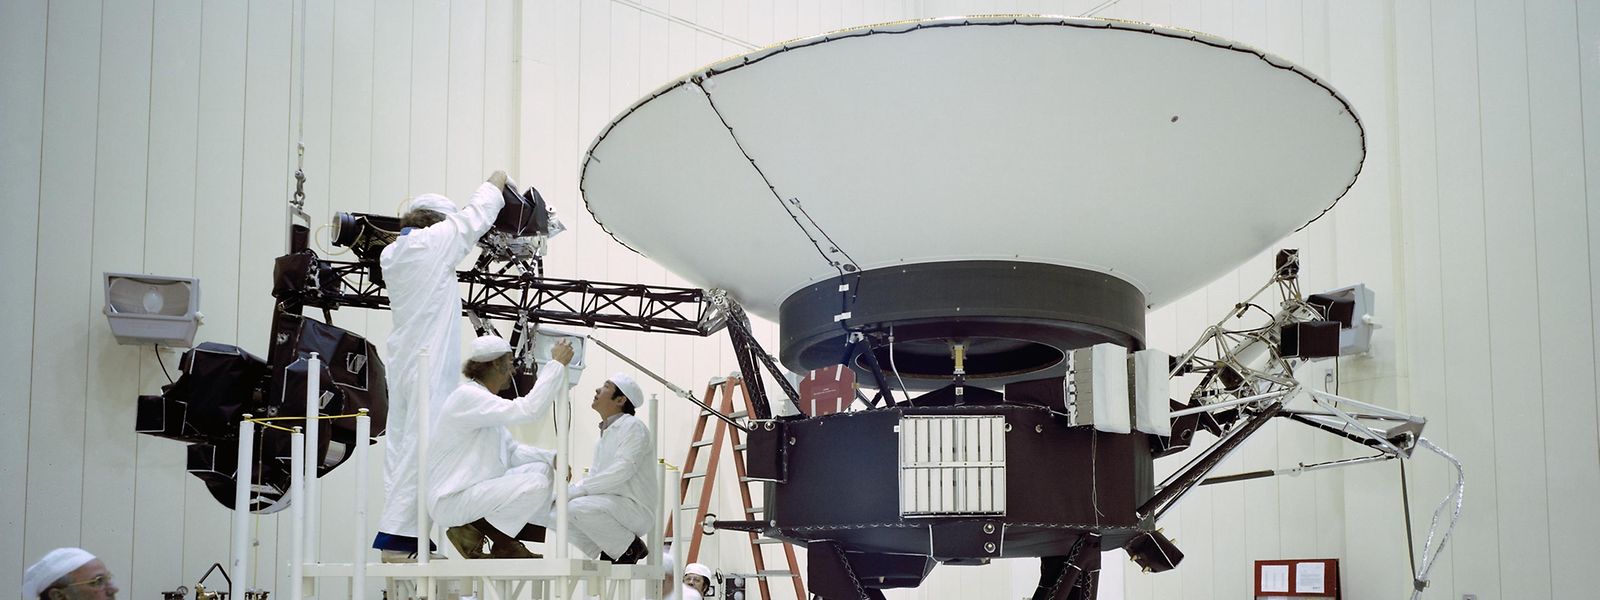 Ingenieure arbeiten im Frühjahr 1977 an der Sonde "Voyager 2".